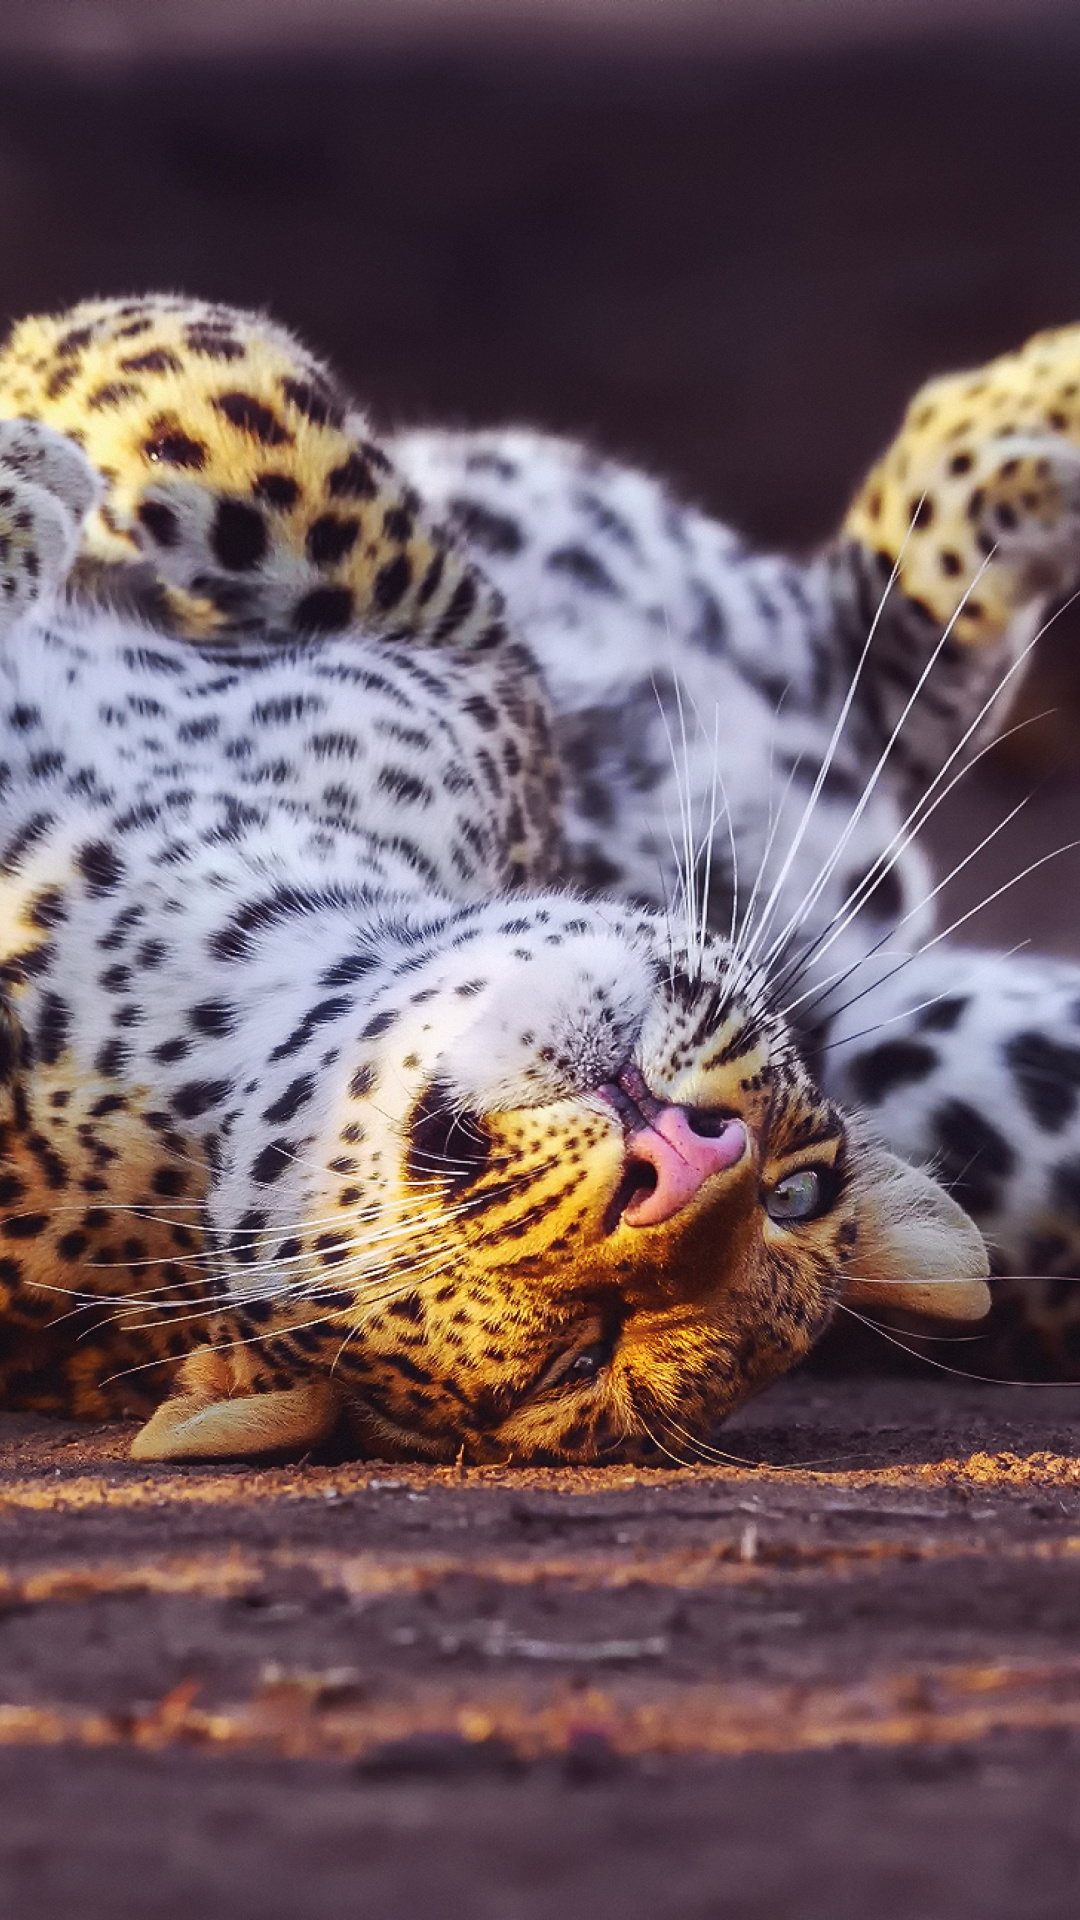 Leopard in Zoo wallpaper 1080x1920